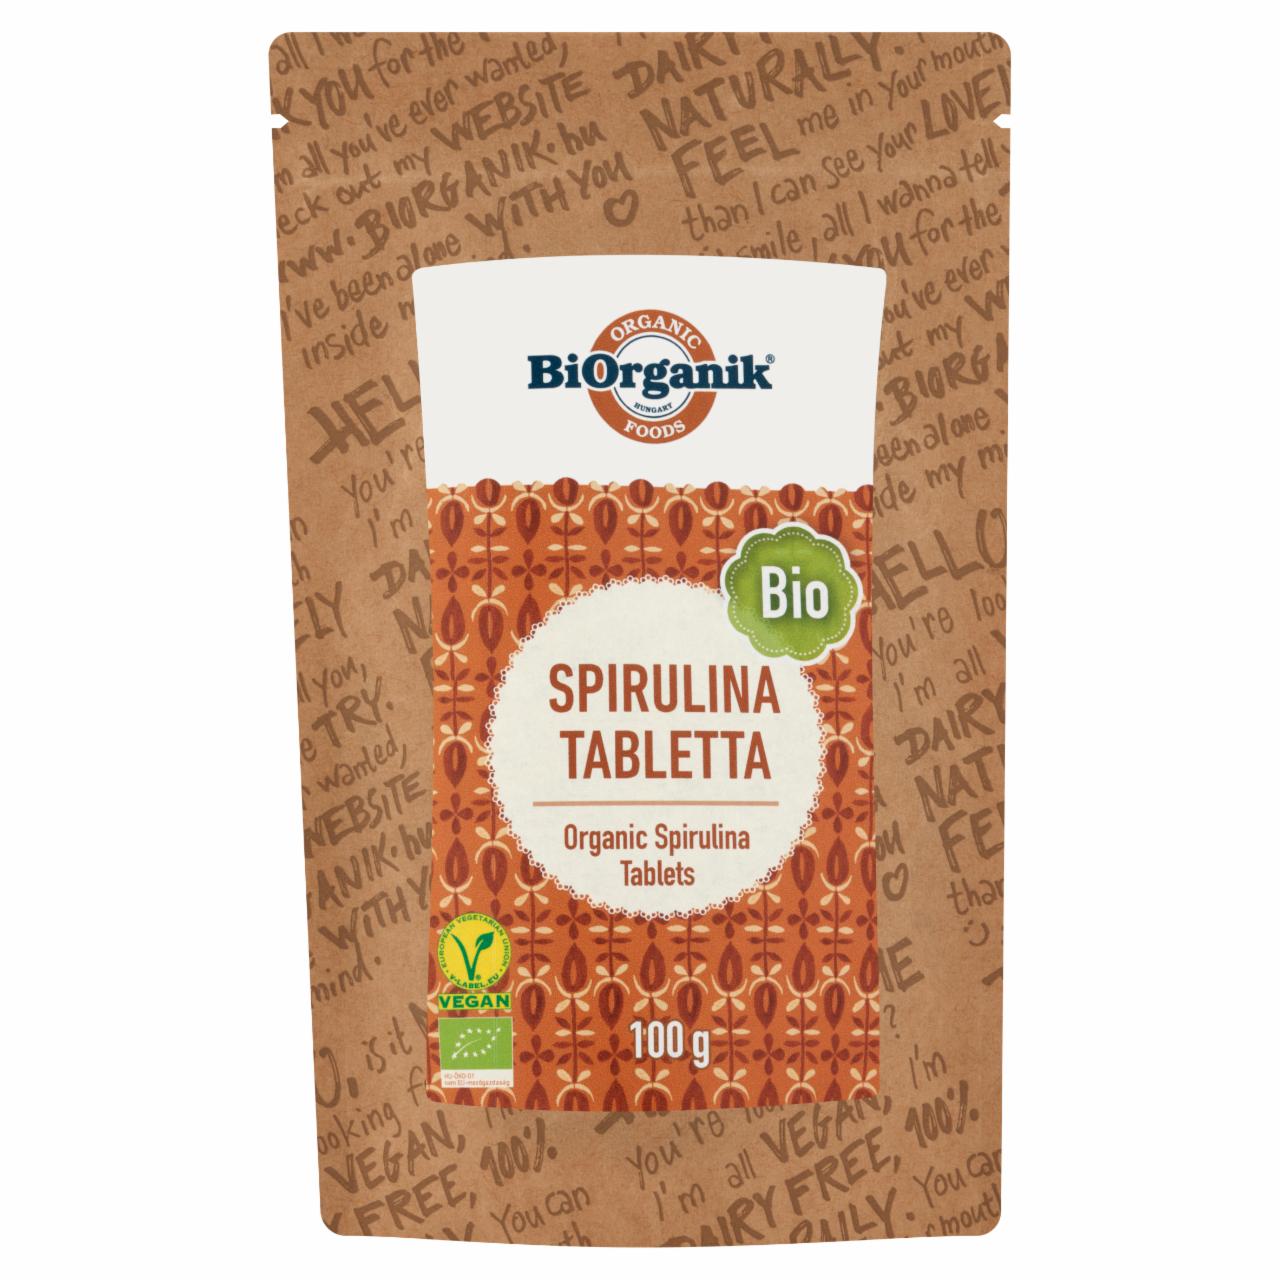 Képek - BiOrganik bio spirulina tabletta étrend-kiegészítő 100 g